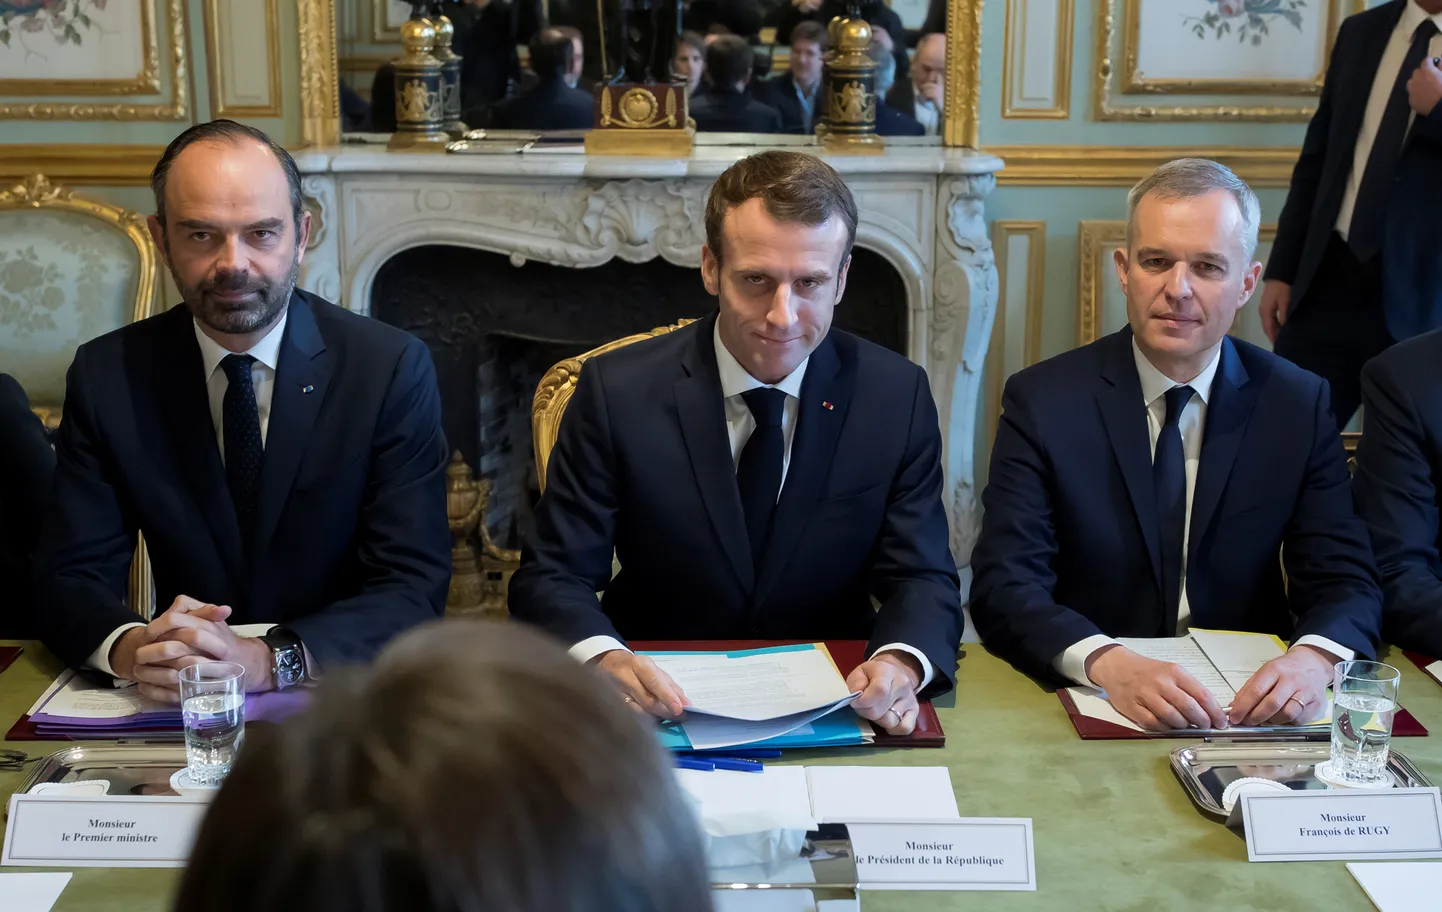 Prantsuse president Emmanuel Macron (keskel) täna Elysee palees tutvustamas riigi keskkonna- ja energiapoliitika tulevikku, tema kõrval on peaminister Edouard Philippe (vasakul) ja keskkonnaminister Francois de Rugy.